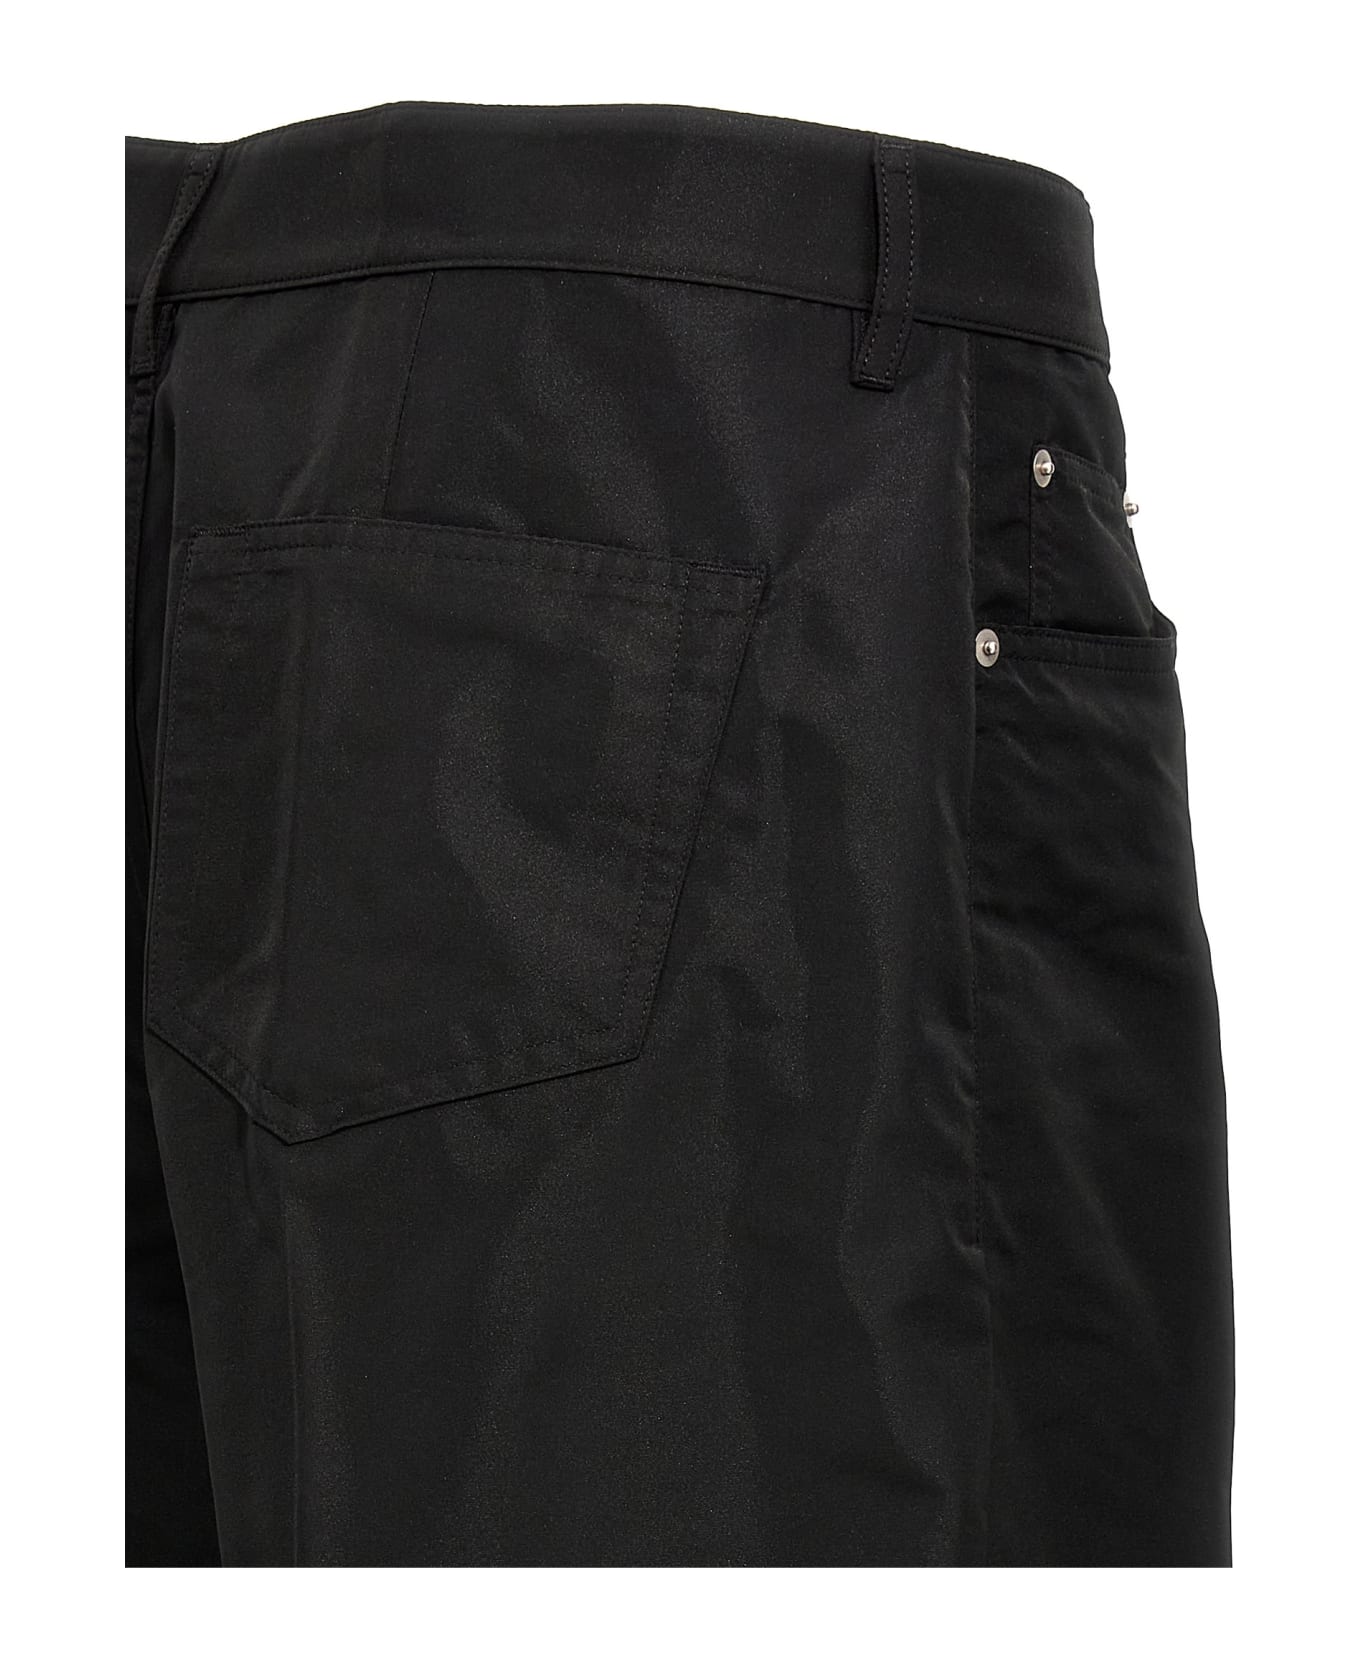 Rick Owens 'geth Jeans' Pants - Black  